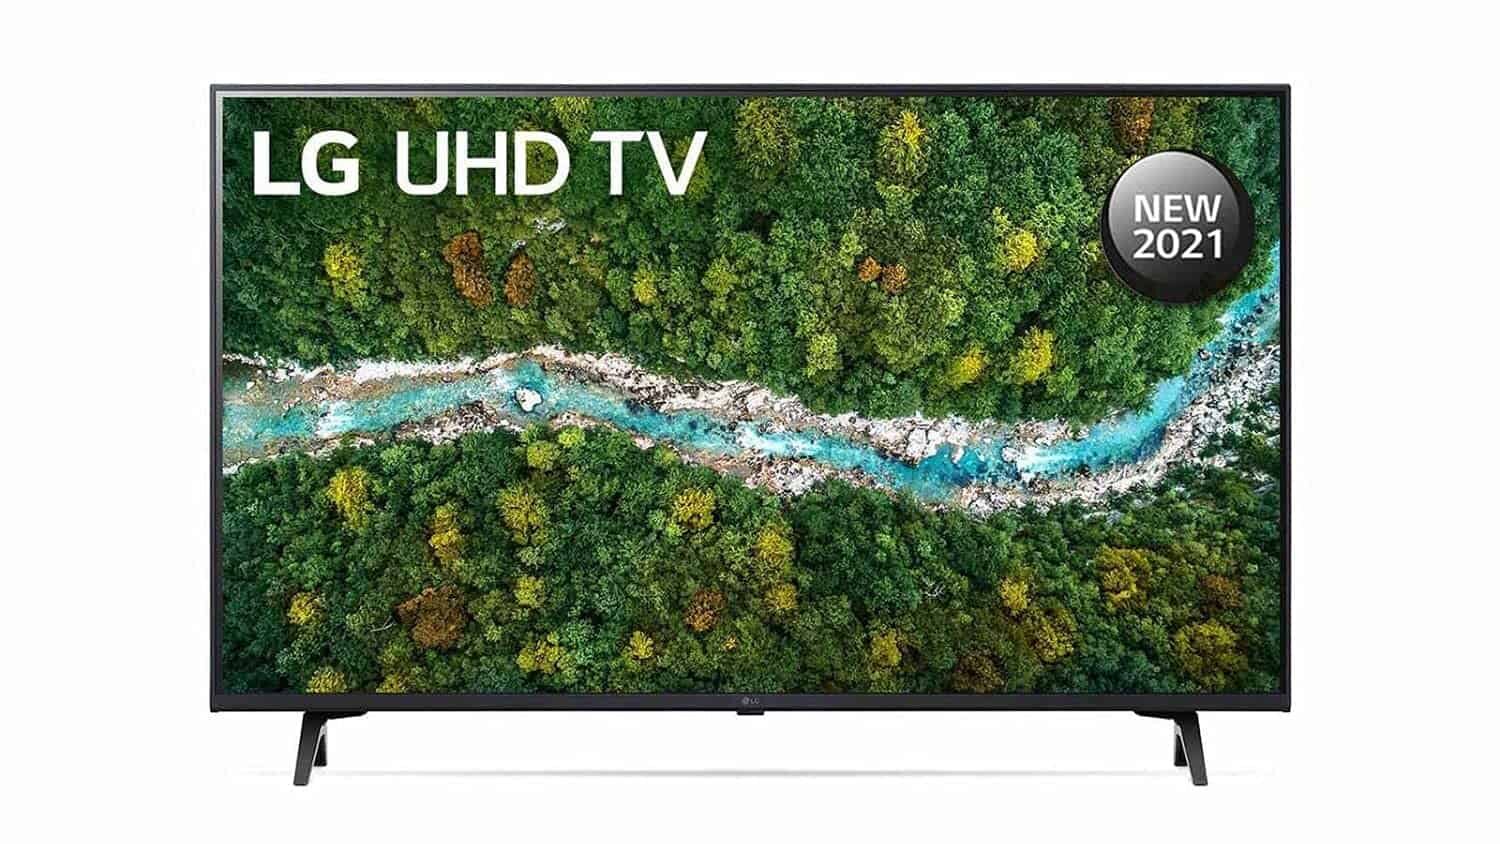 LG (43 inch) Ultra HD (4K) LED Smart TV